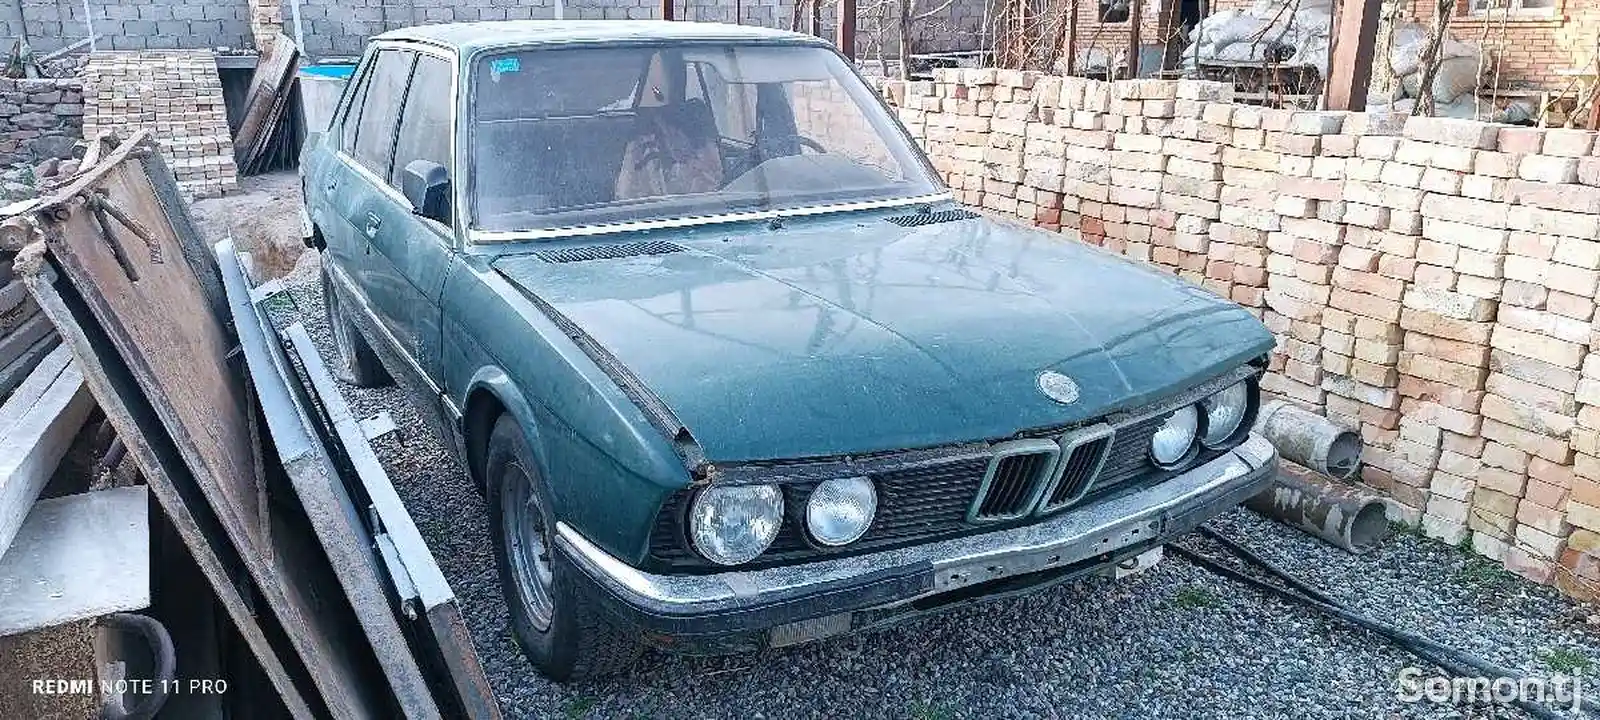 BMW x5 на запчасти-1